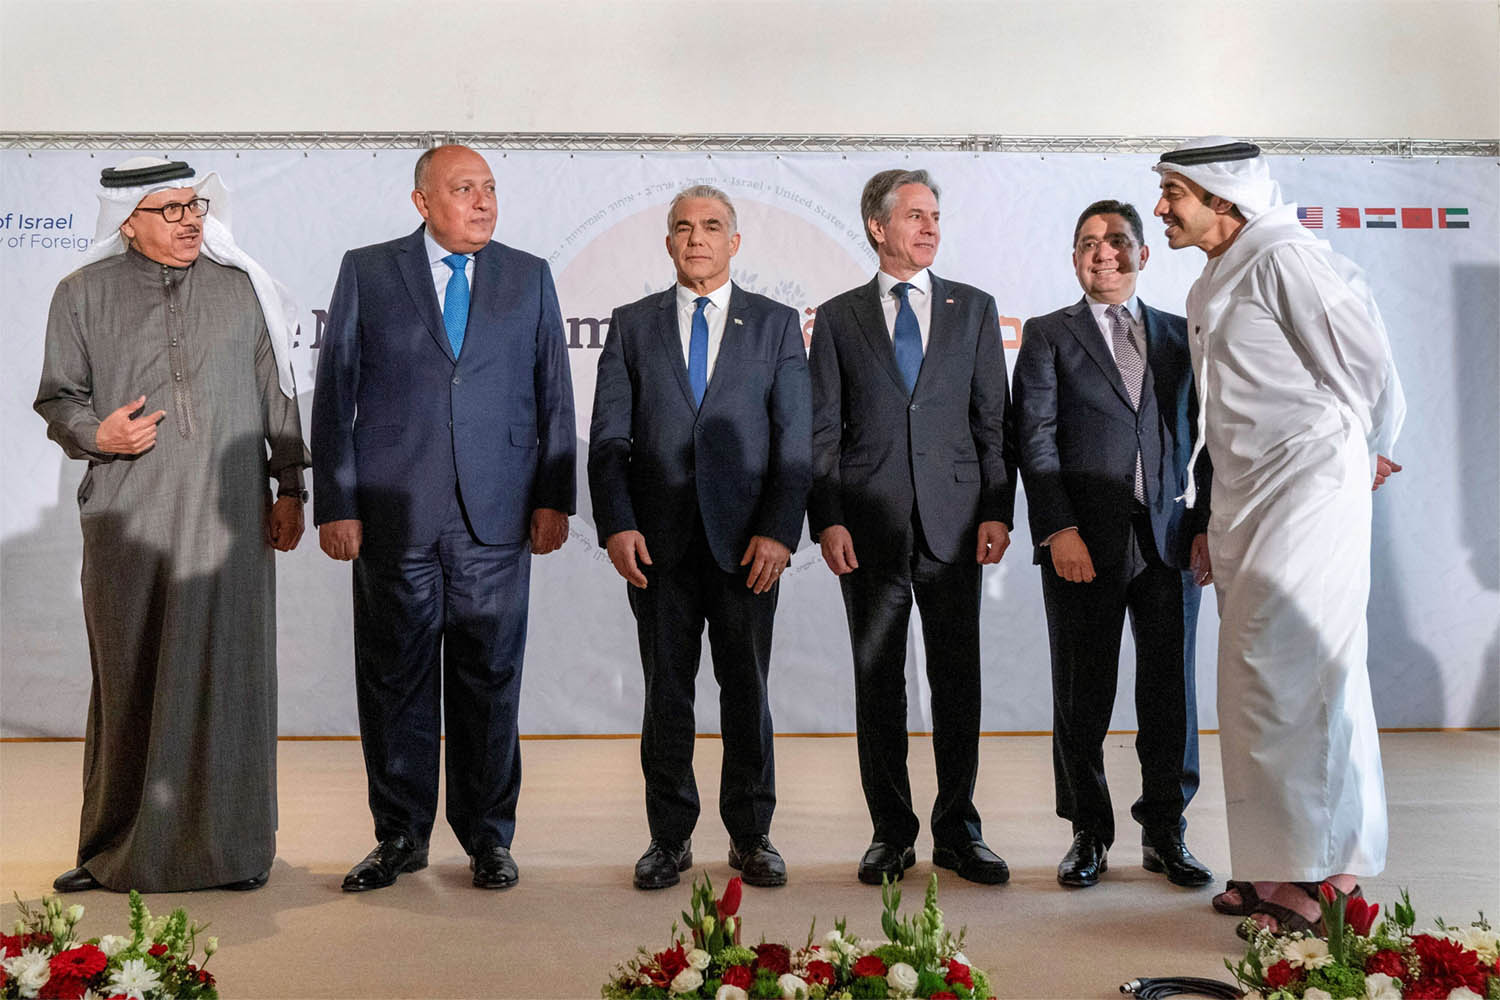 Arab-Israel summit